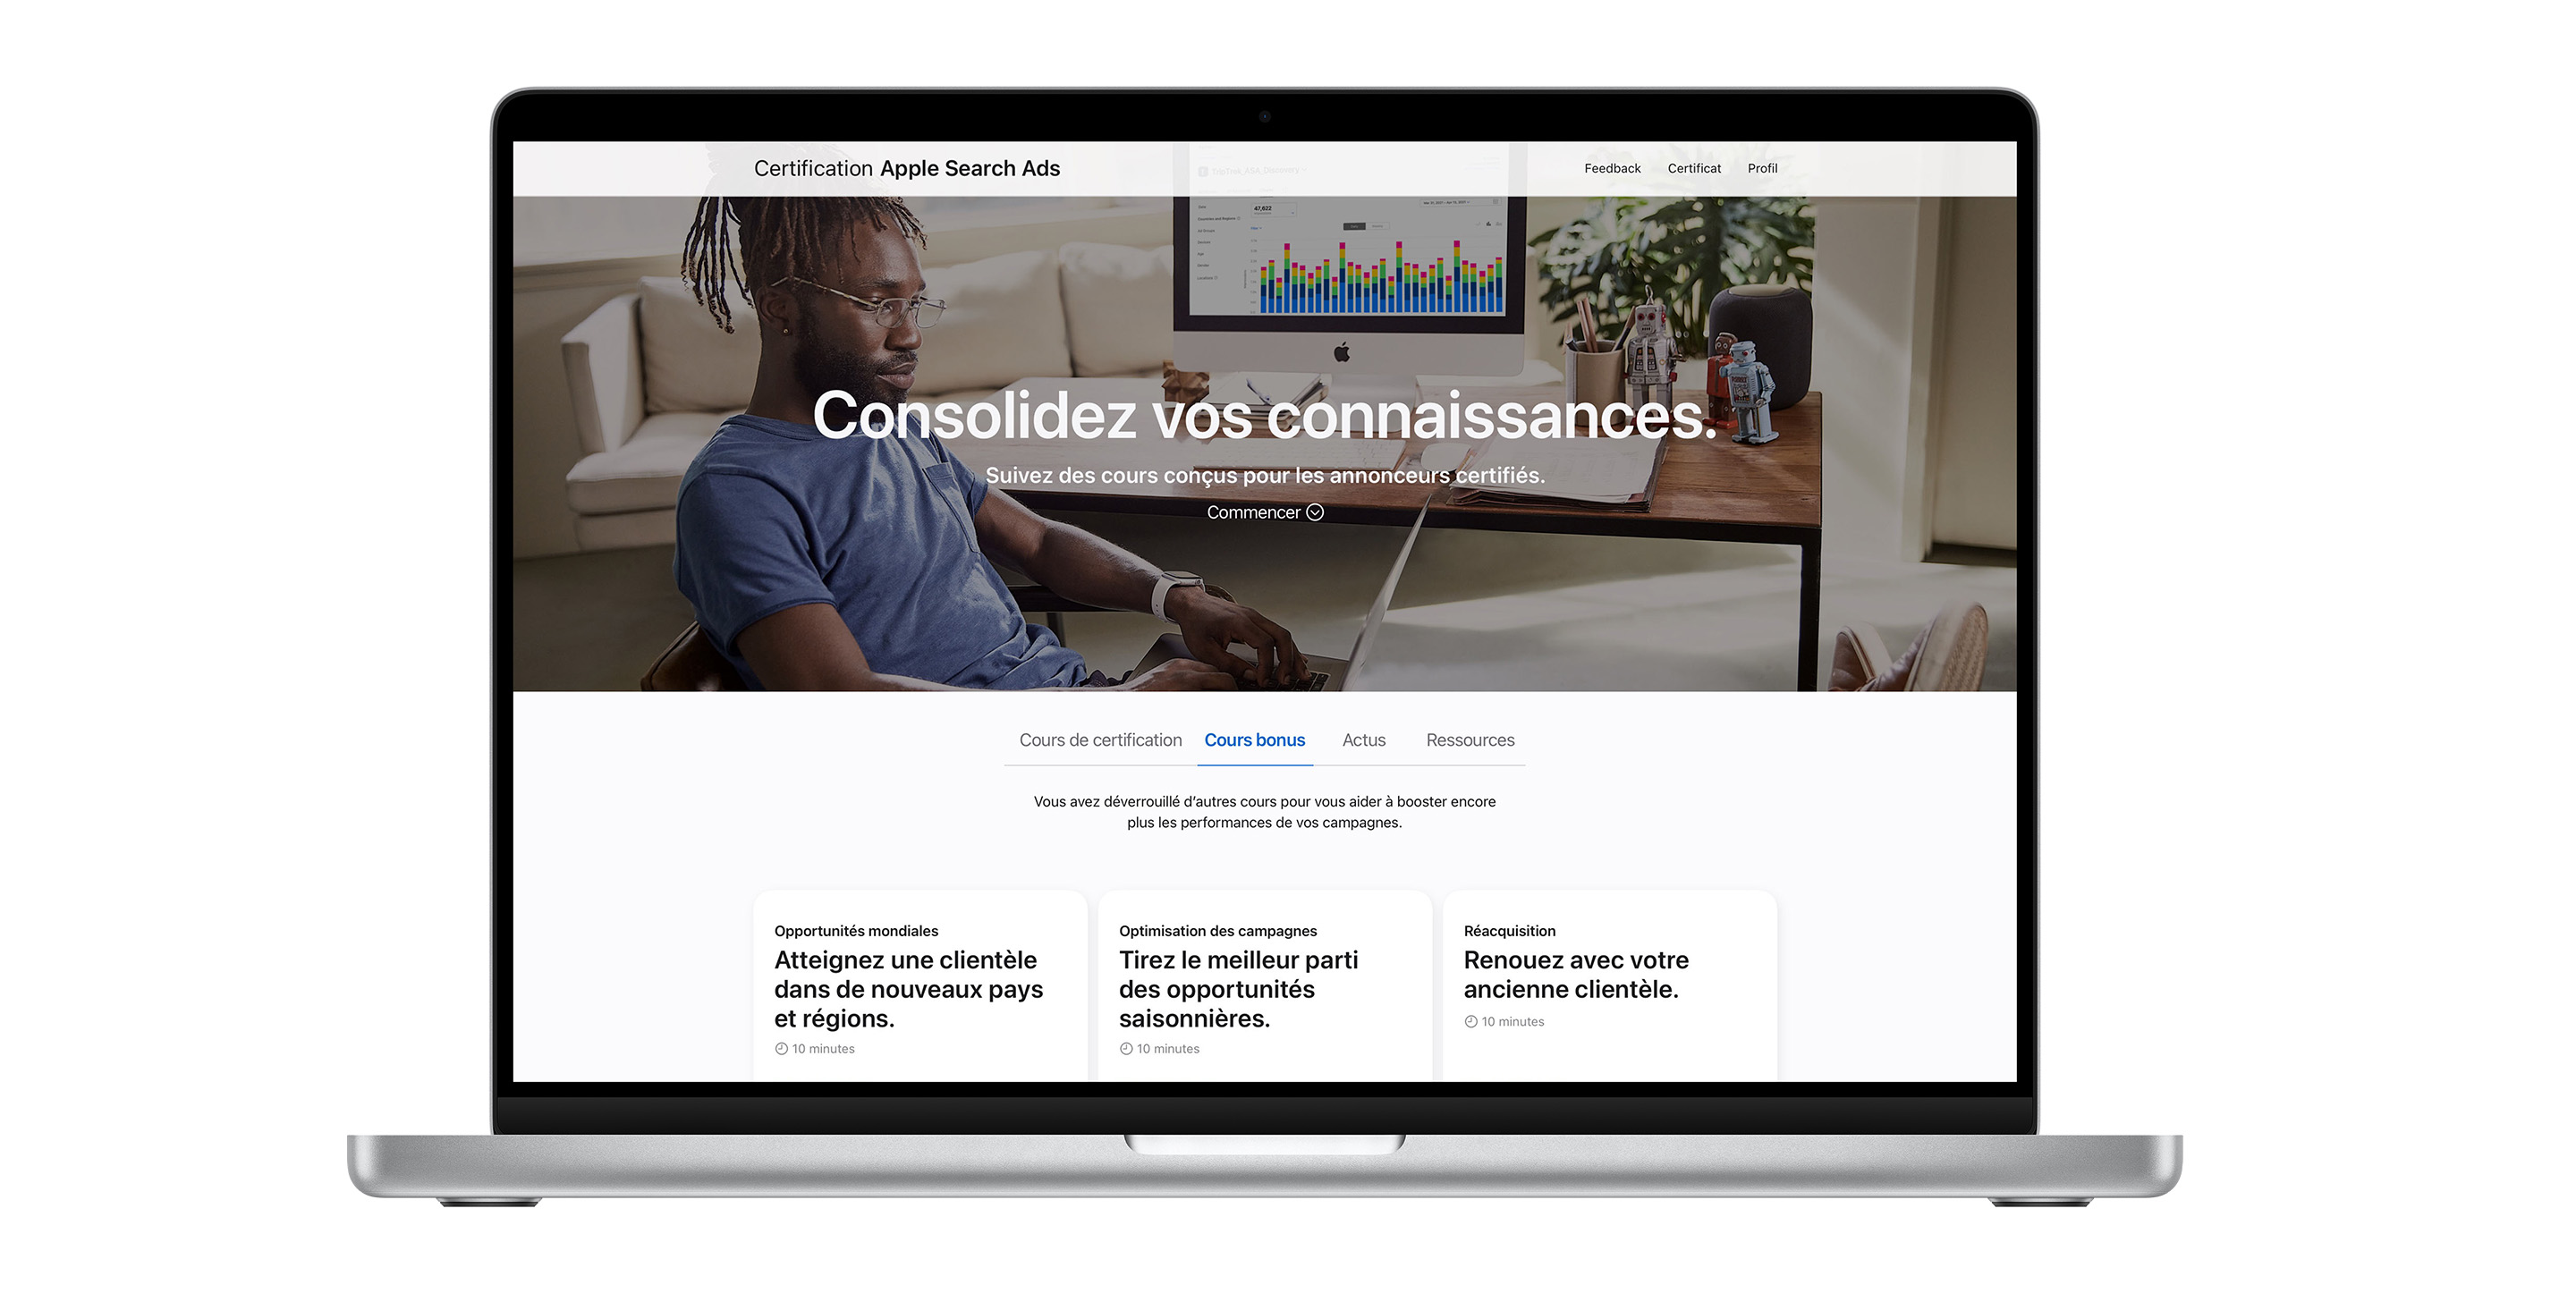 La page de certification Apple Search Ads affichant l’onglet des cours bonus. Il contient trois leçons pour améliorer les performances de vos campagnes.